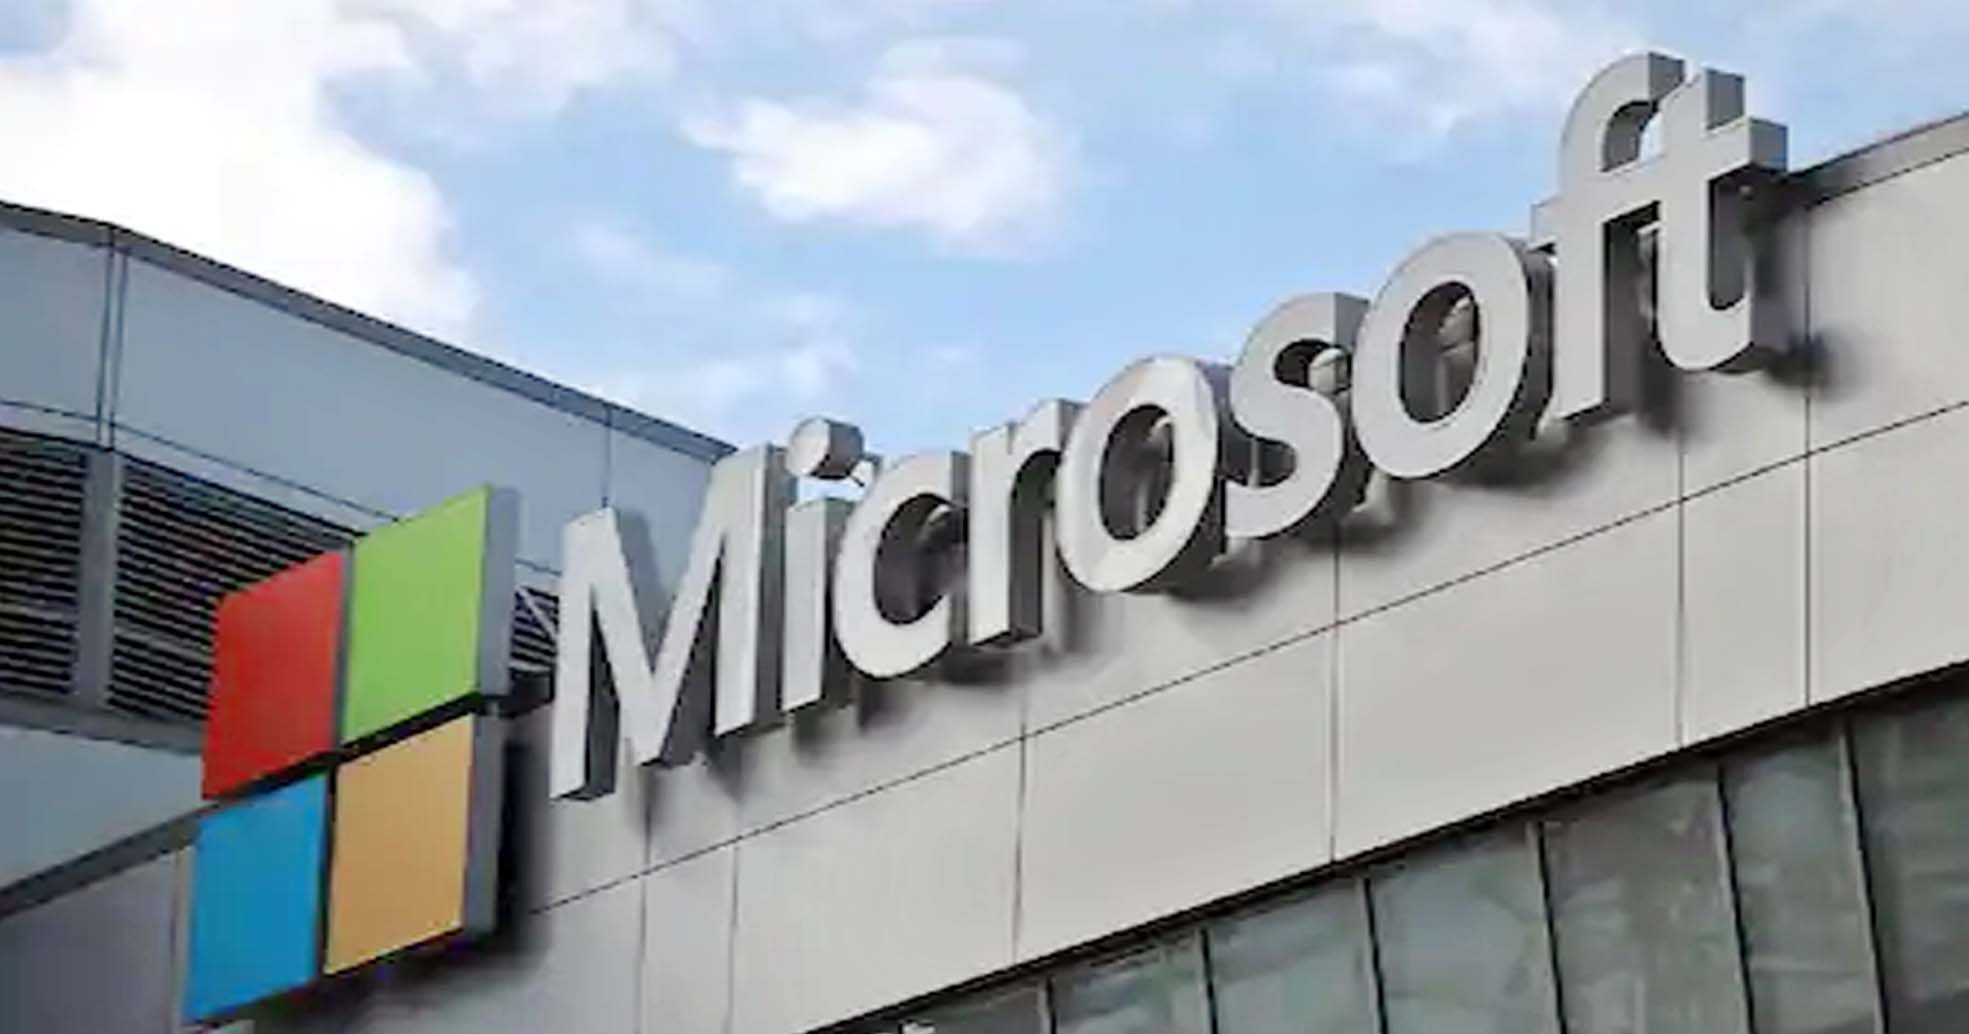 अगले महीने लॉन्च हो सकता है Microsoft विंडो का अपडेटेड वर्ज़न